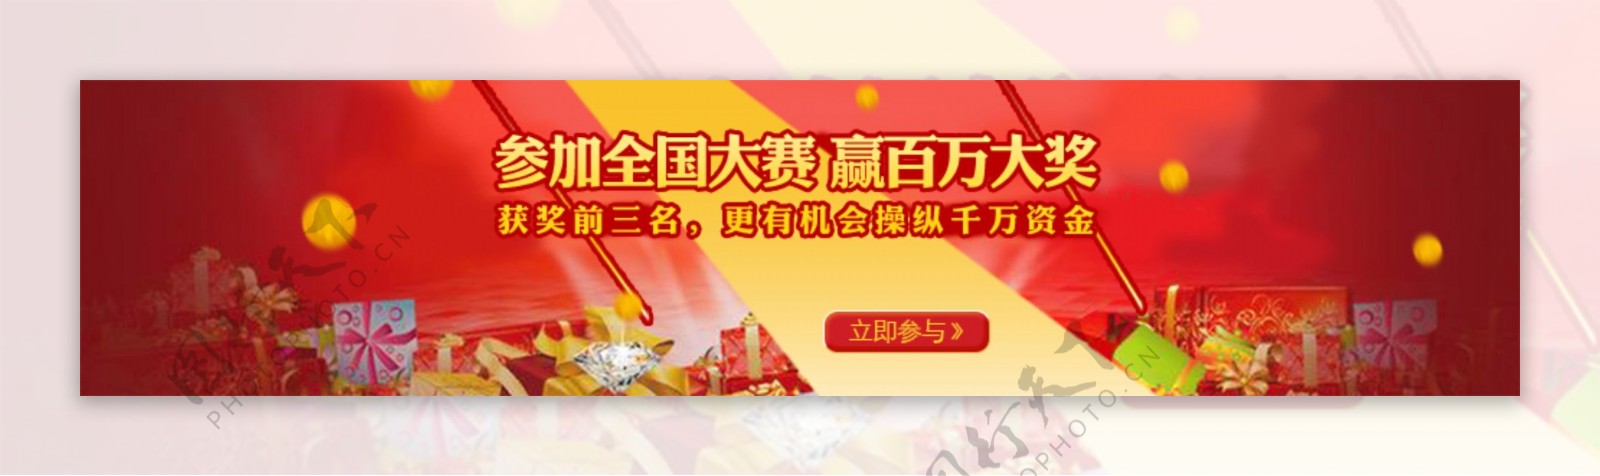 参赛赢大奖金融行业banner